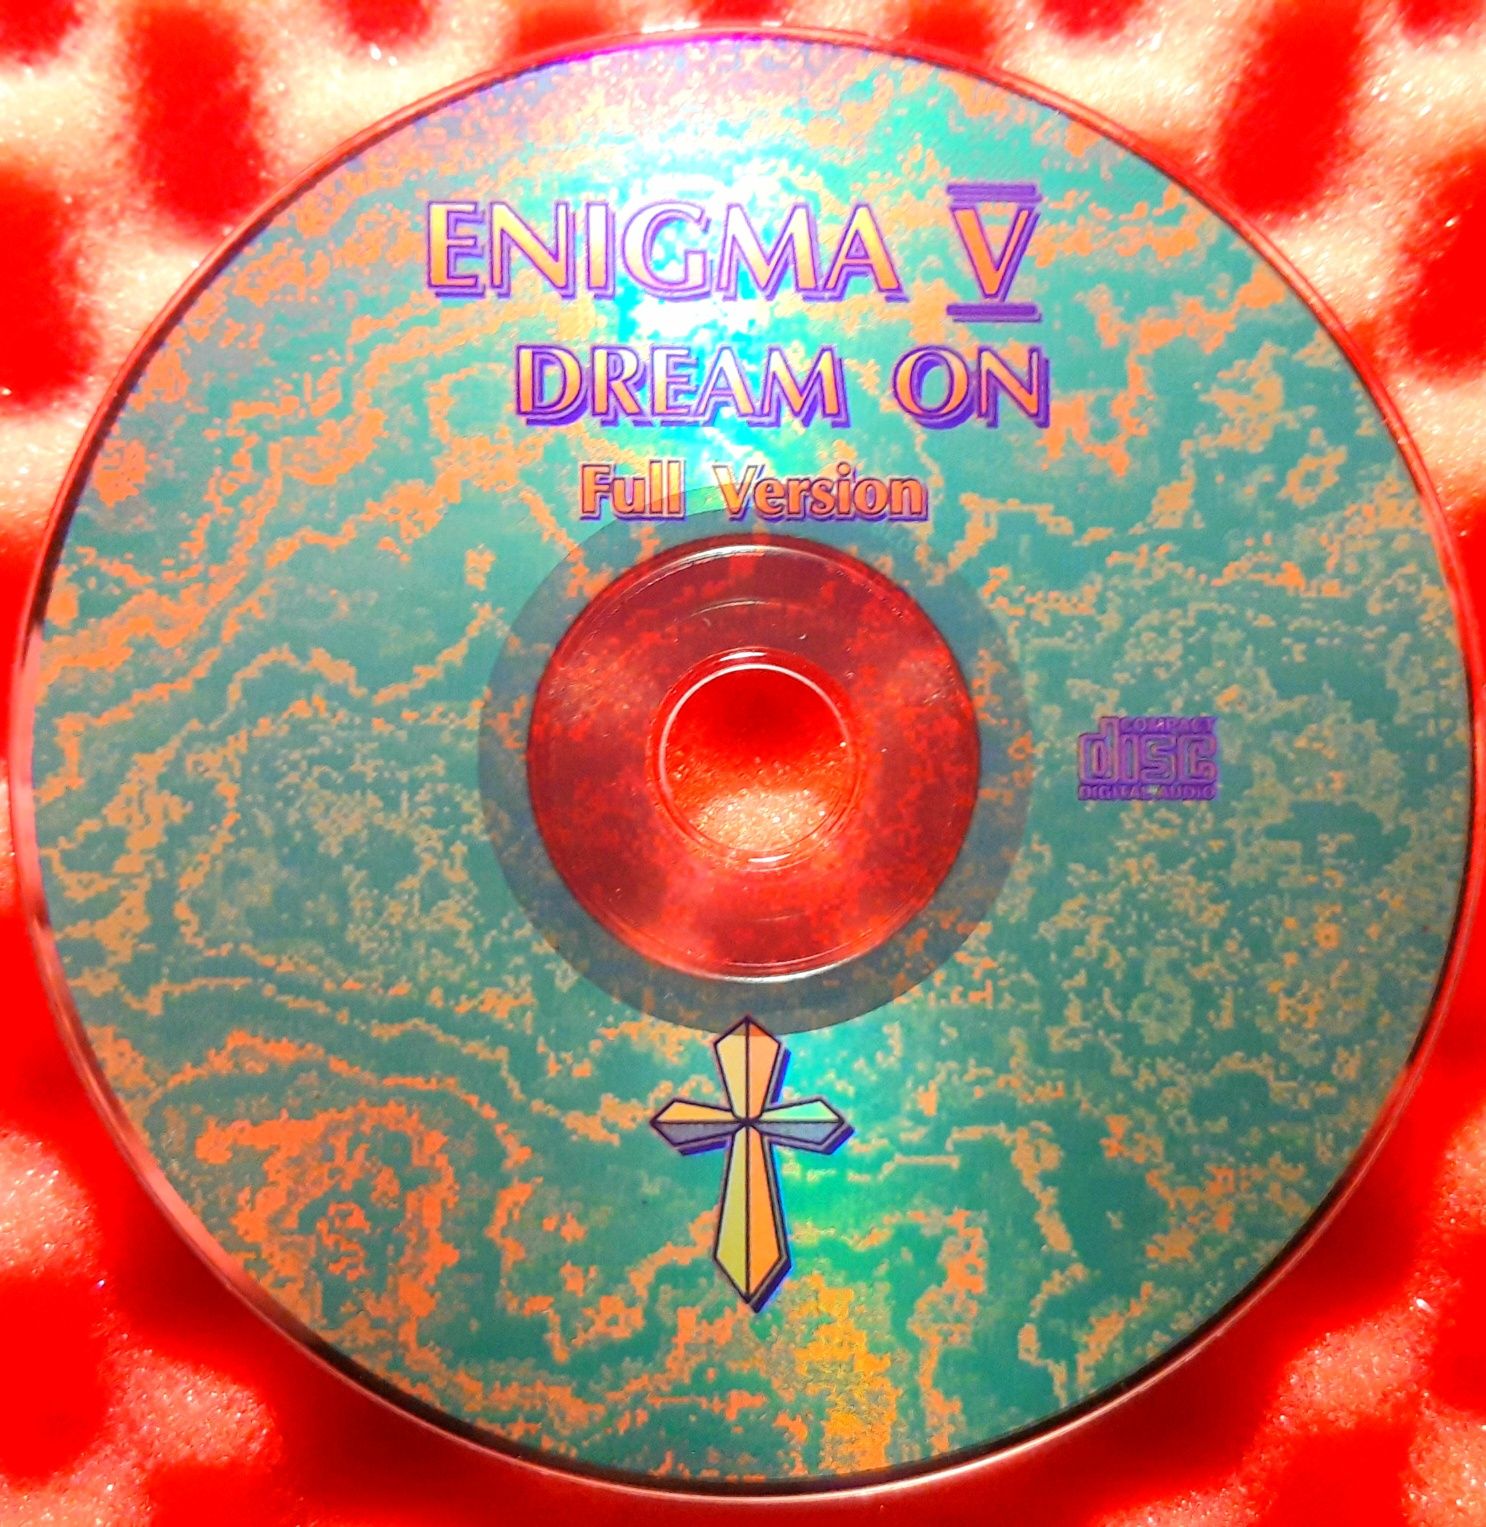 Enigma – Enigma V: Dream On (Full Version) CD, 2000